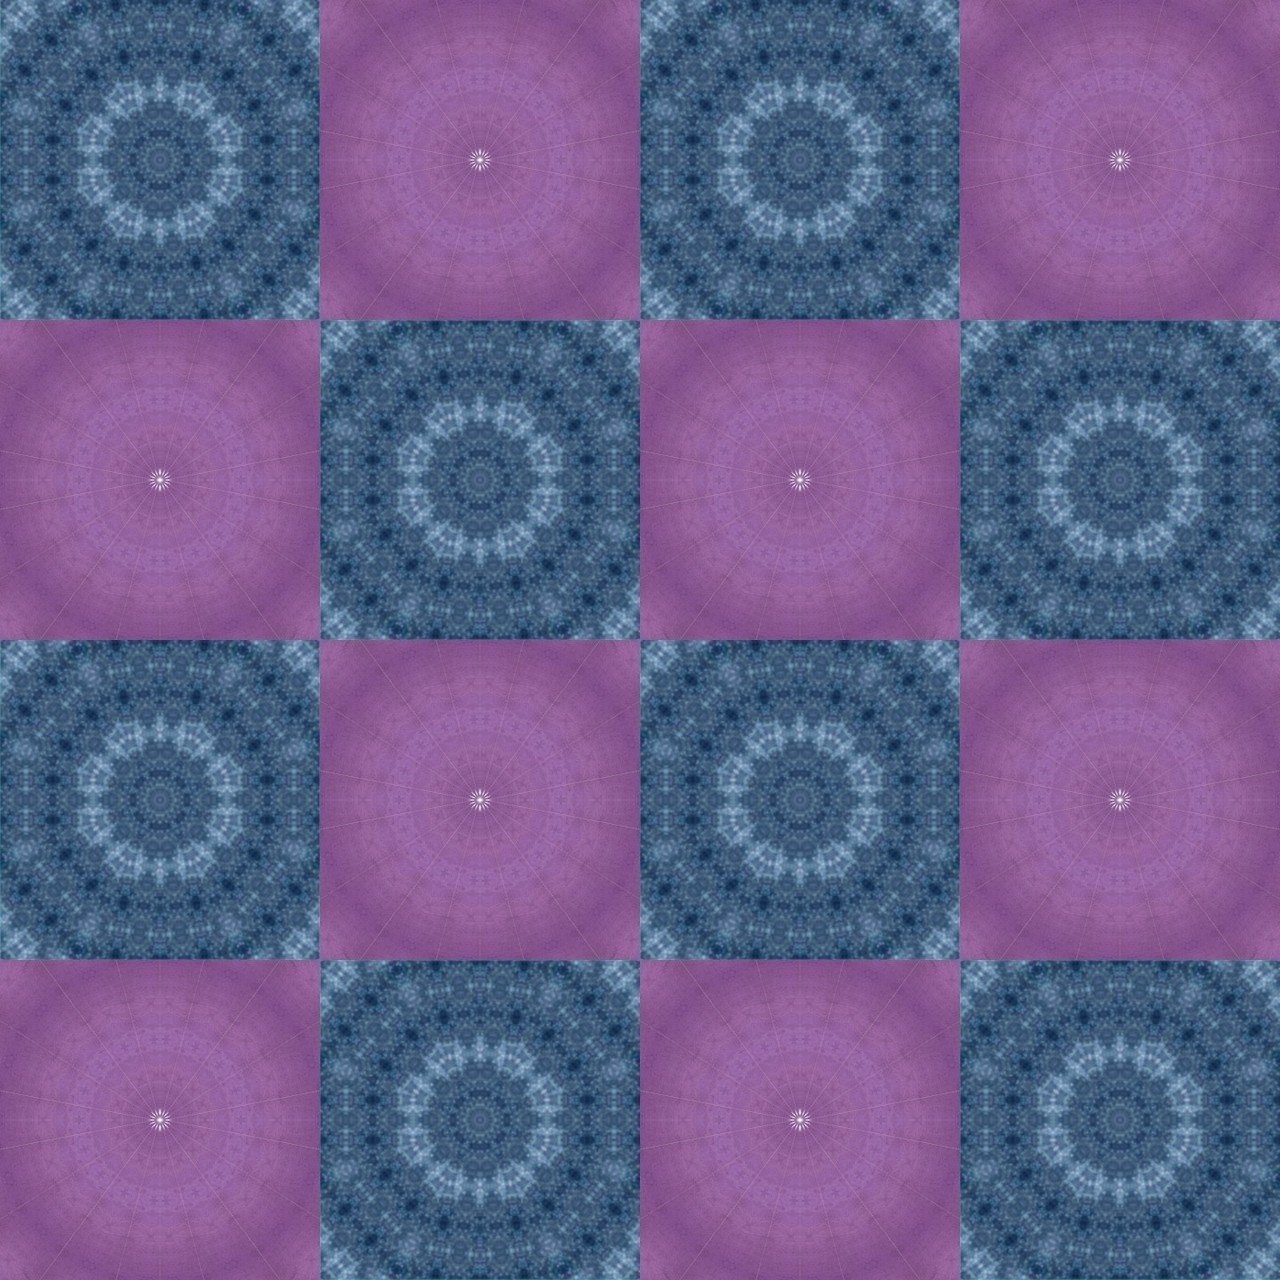 アスファルト 紺 紫 市松模様 シームレスパターン 背景素材 壁紙 Note